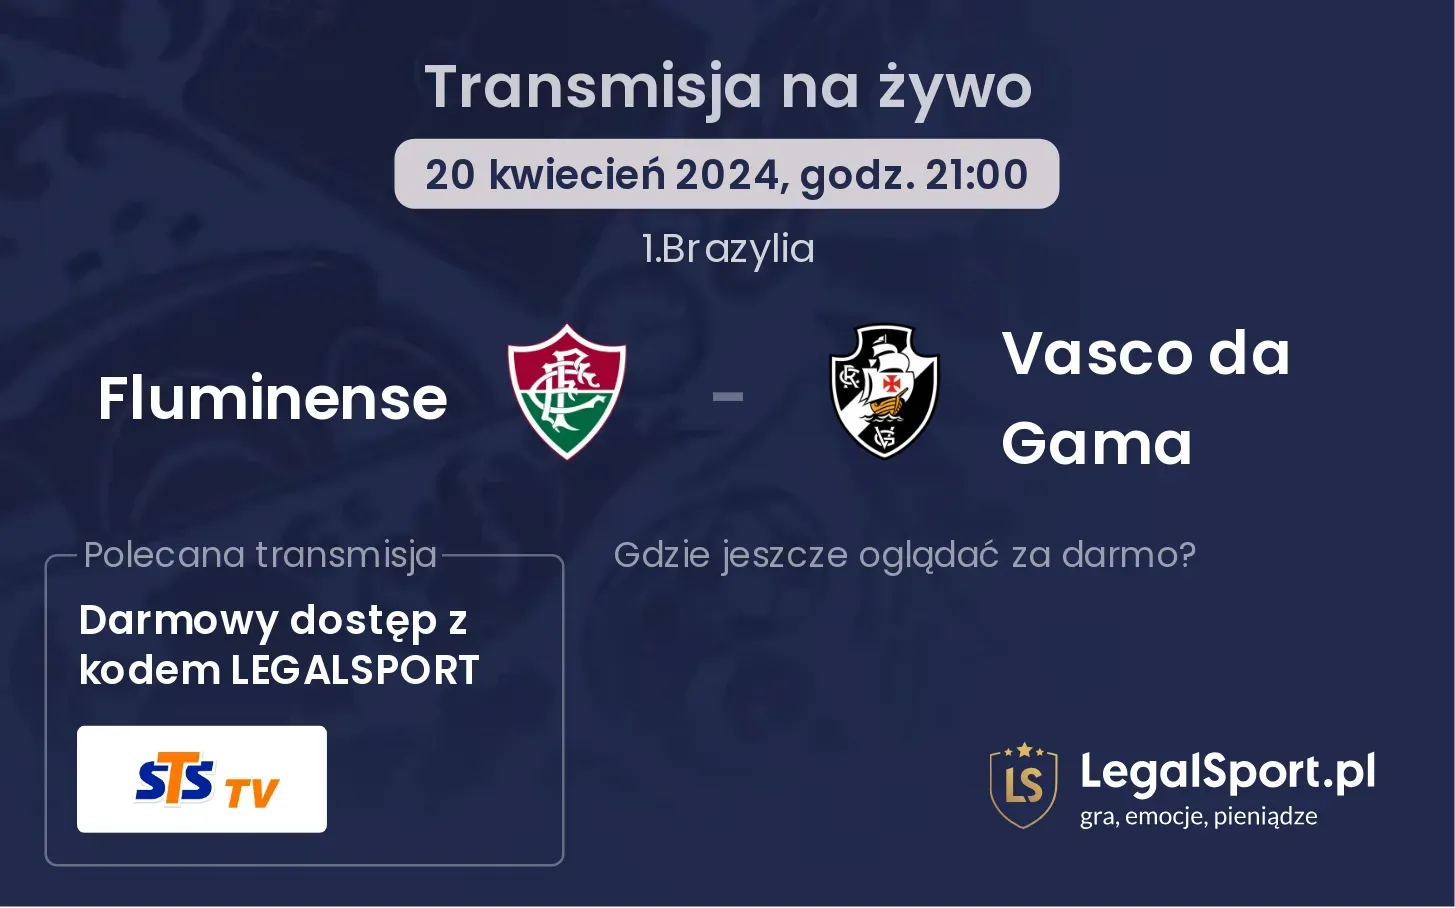 Fluminense - Vasco da Gama transmisja na żywo